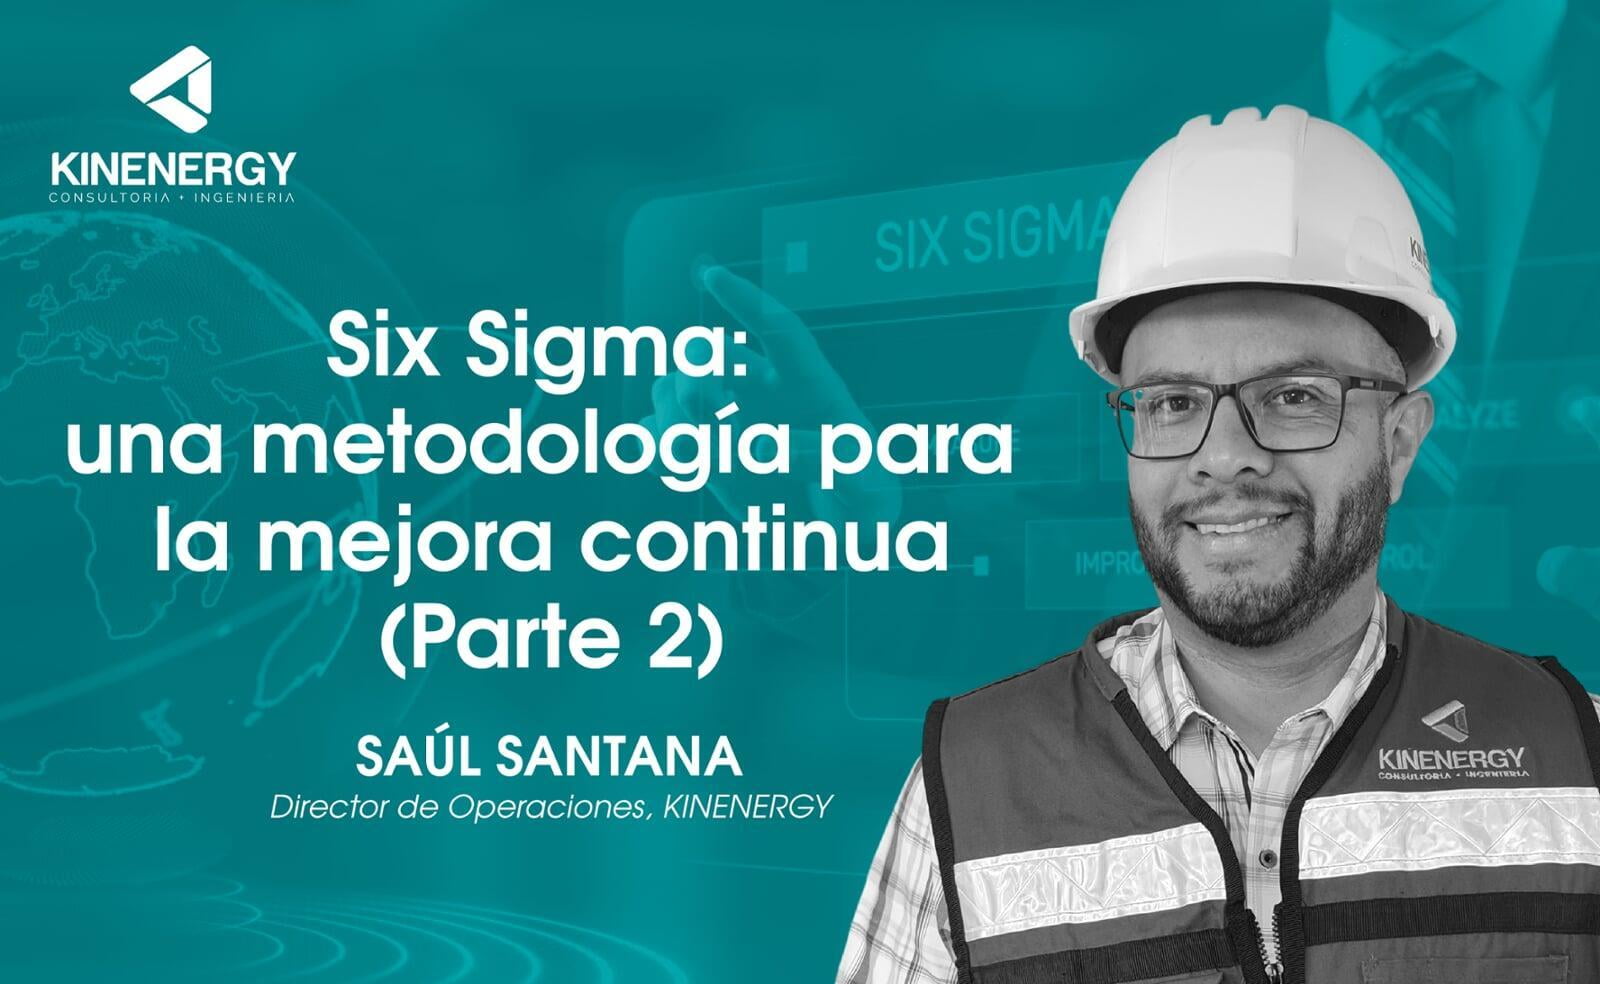 Six Sigma: una metodología para la mejora continua (parte 2)